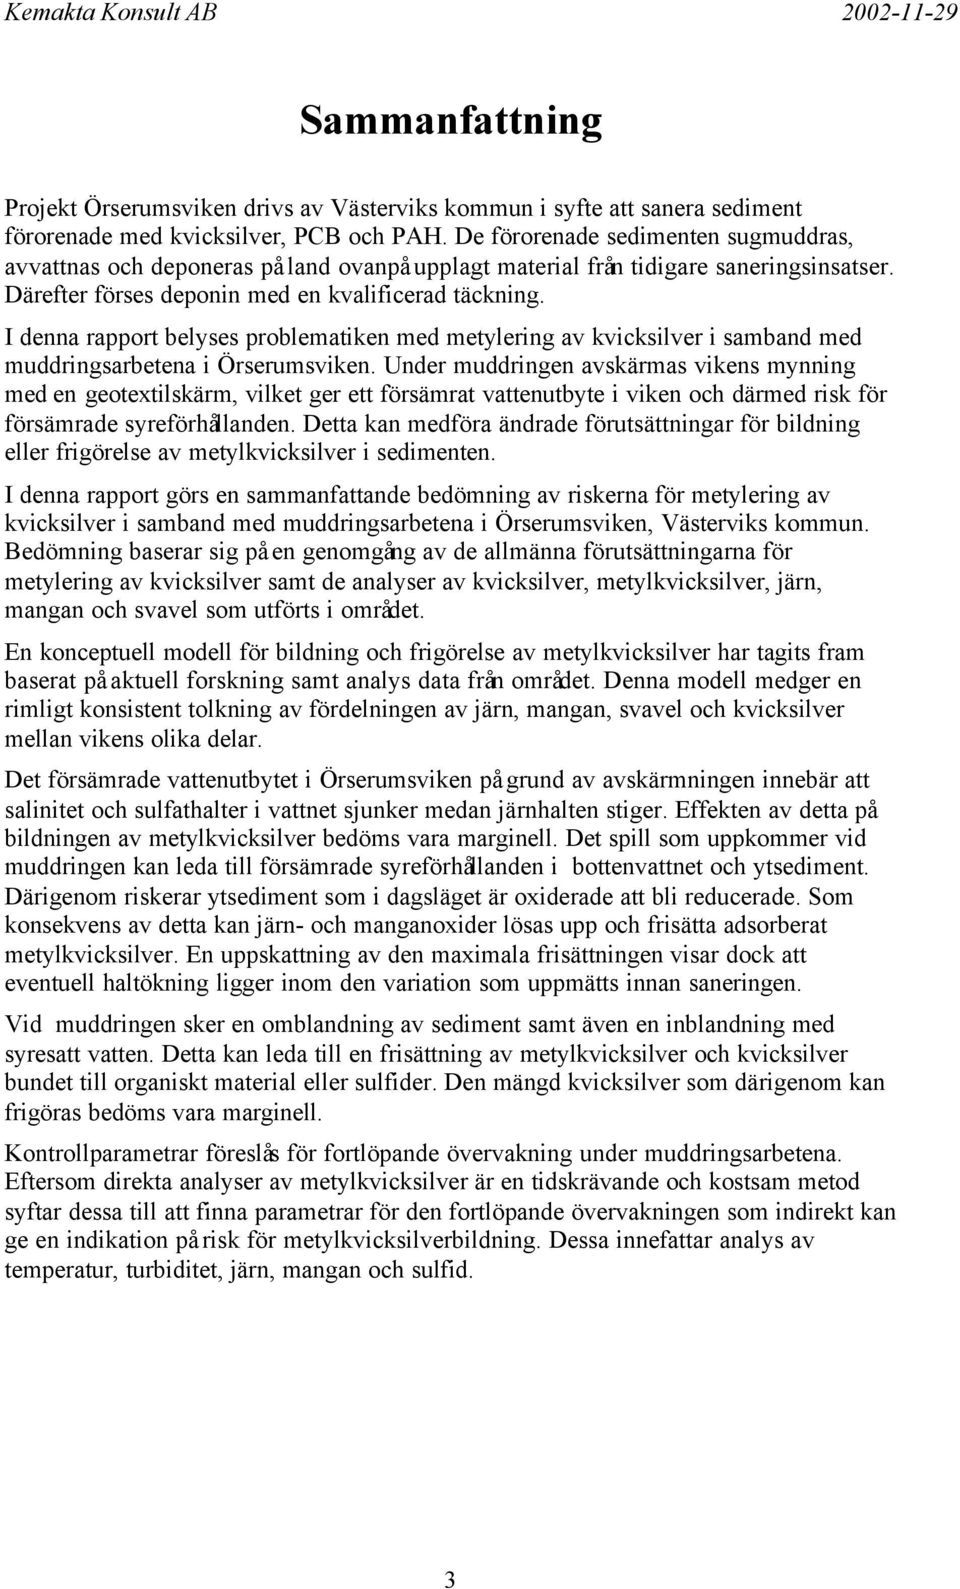 I denna rapport belyses problematiken med metylering av kvicksilver i samband med muddringsarbetena i Örserumsviken.